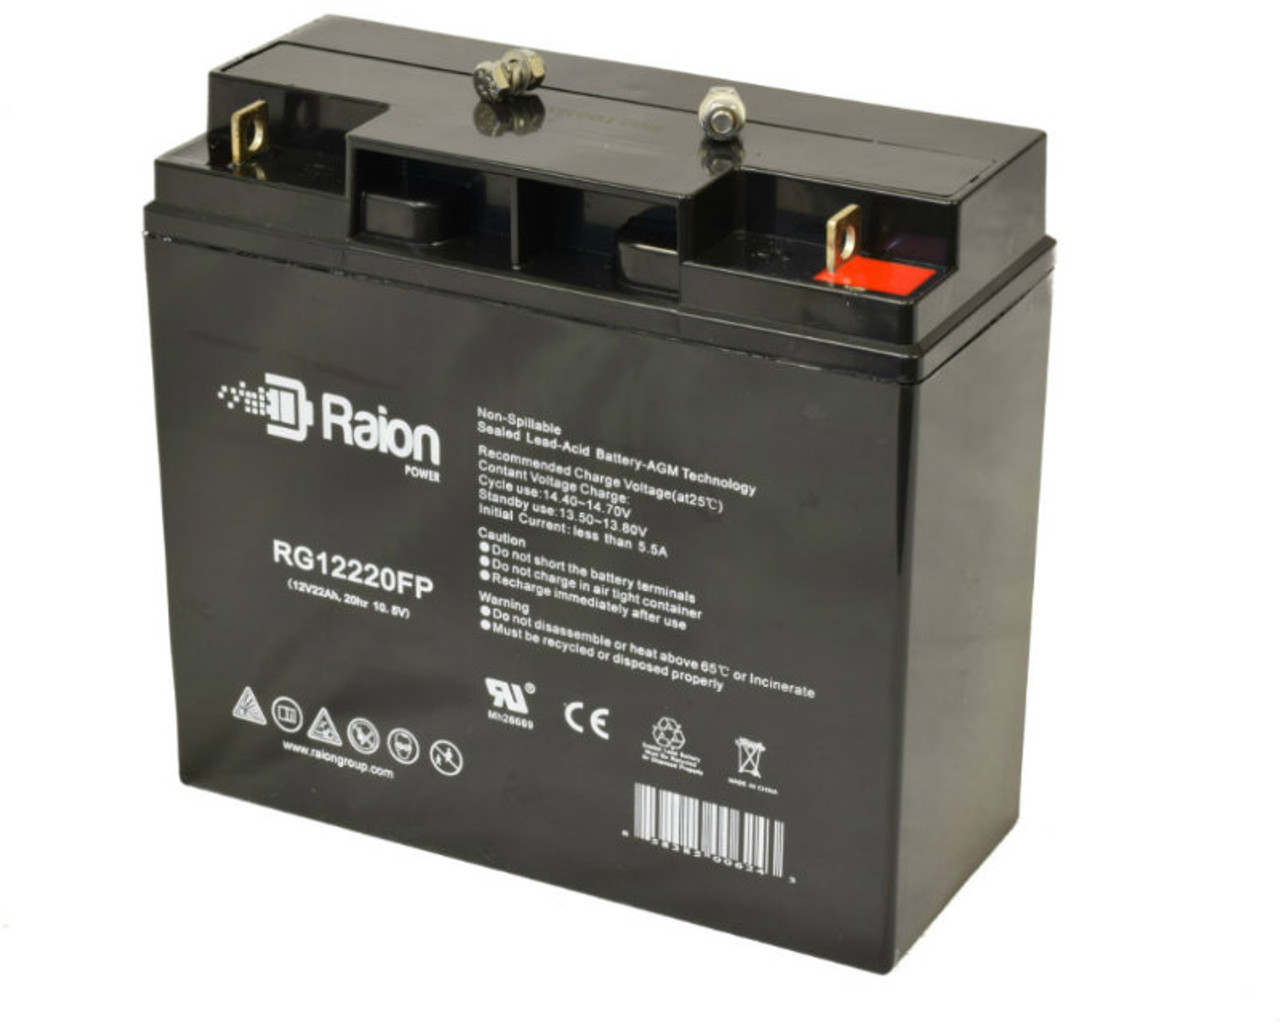 Raion Power RG12220FP 12V 22Ah Lead Acid Wheelchair Battery for Merits MP2